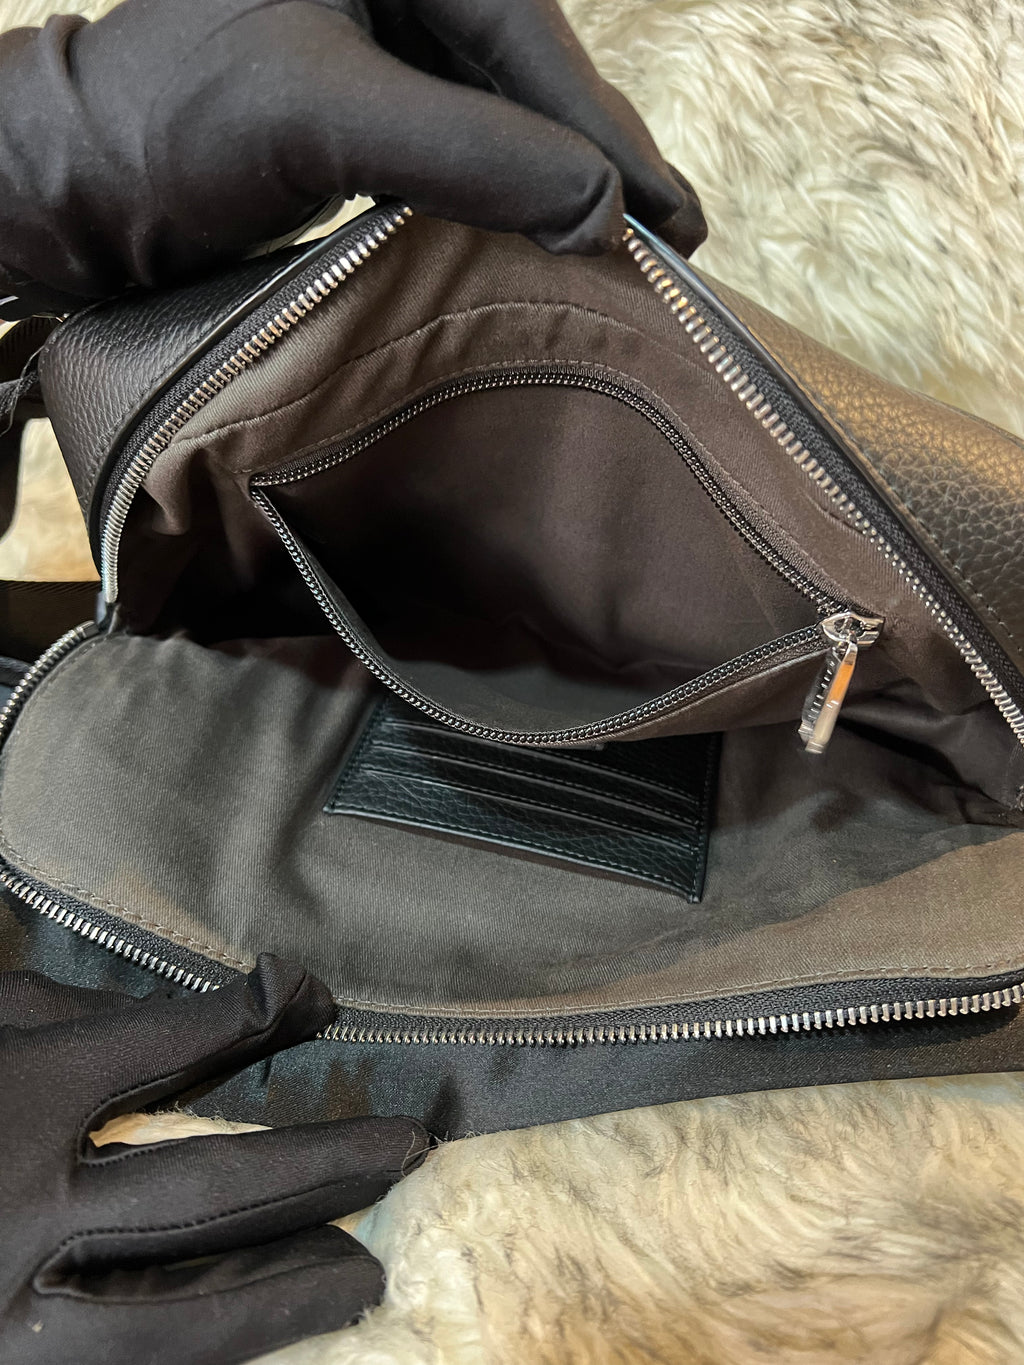 Unused Hugo Boss Body Bag For Men